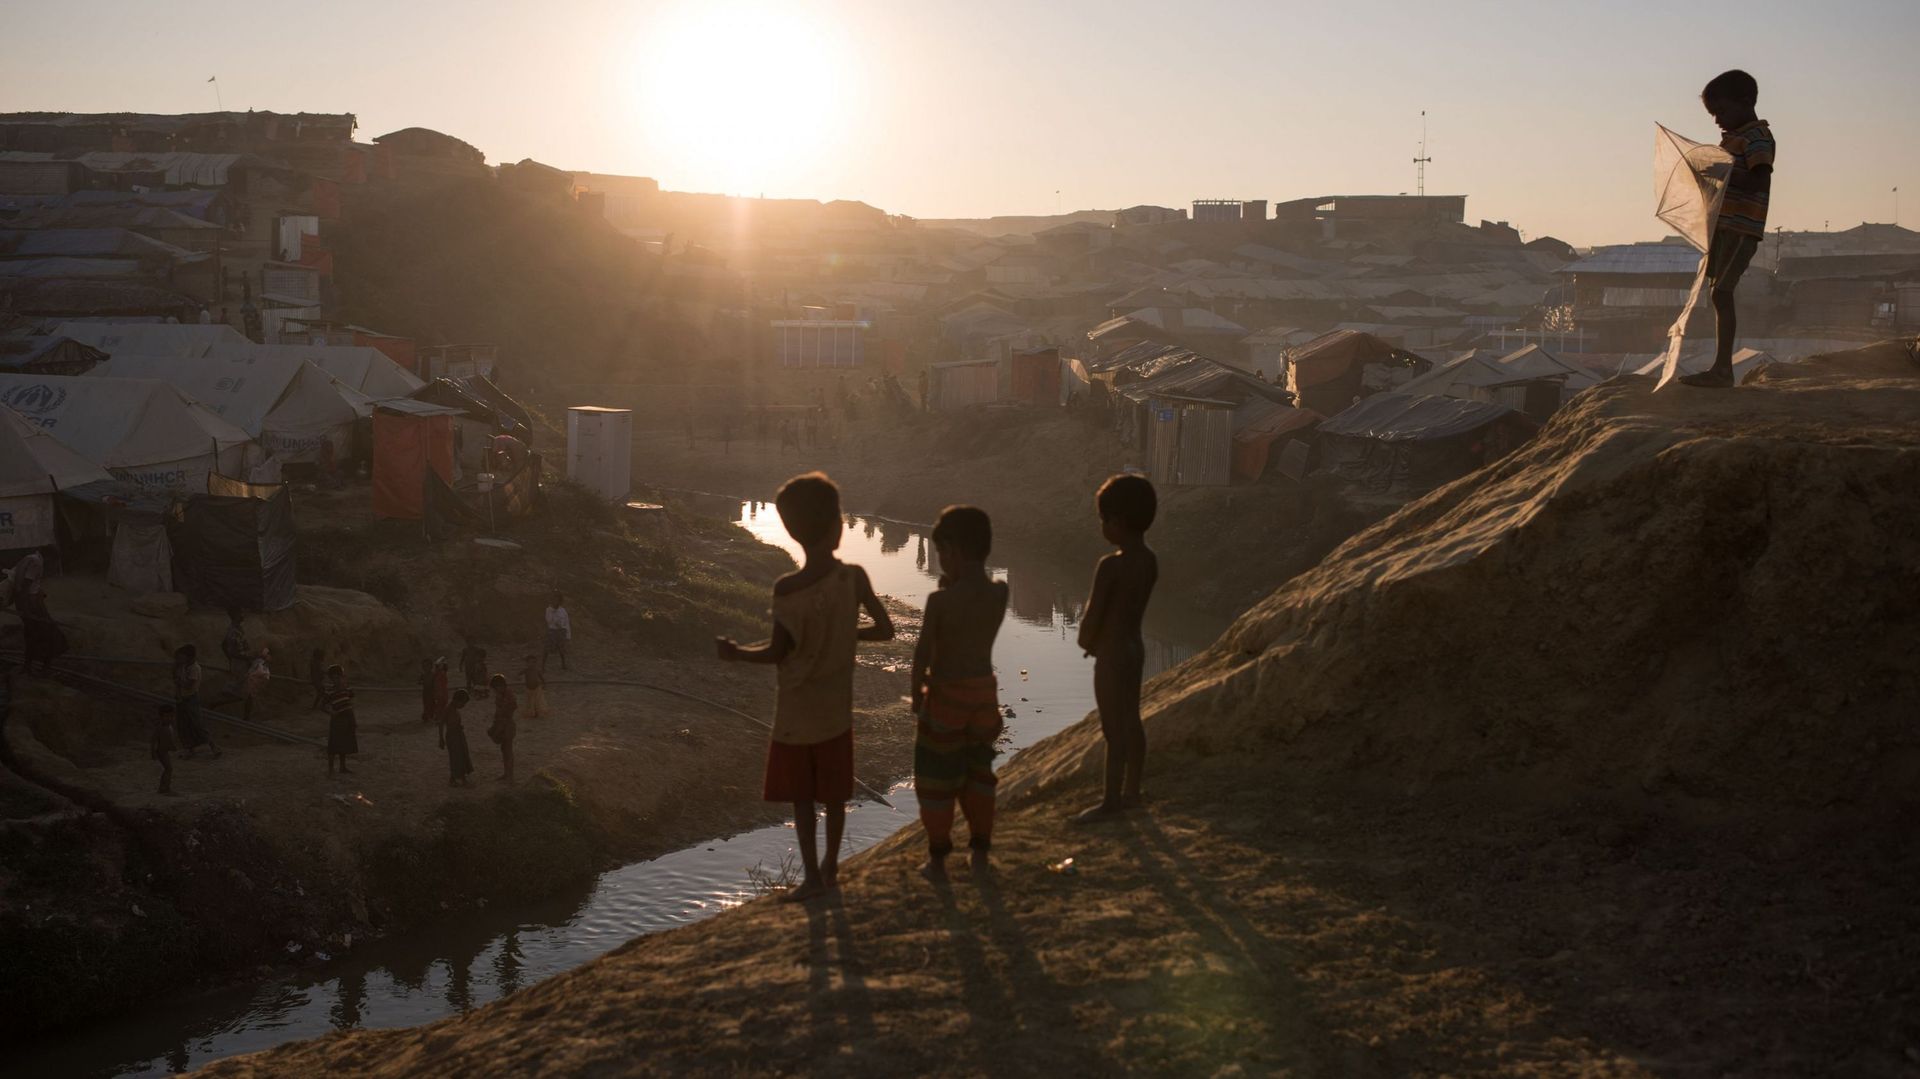 Les enfants rohingyas vivent dans des conditions épouvantables, alerte l'Unicef